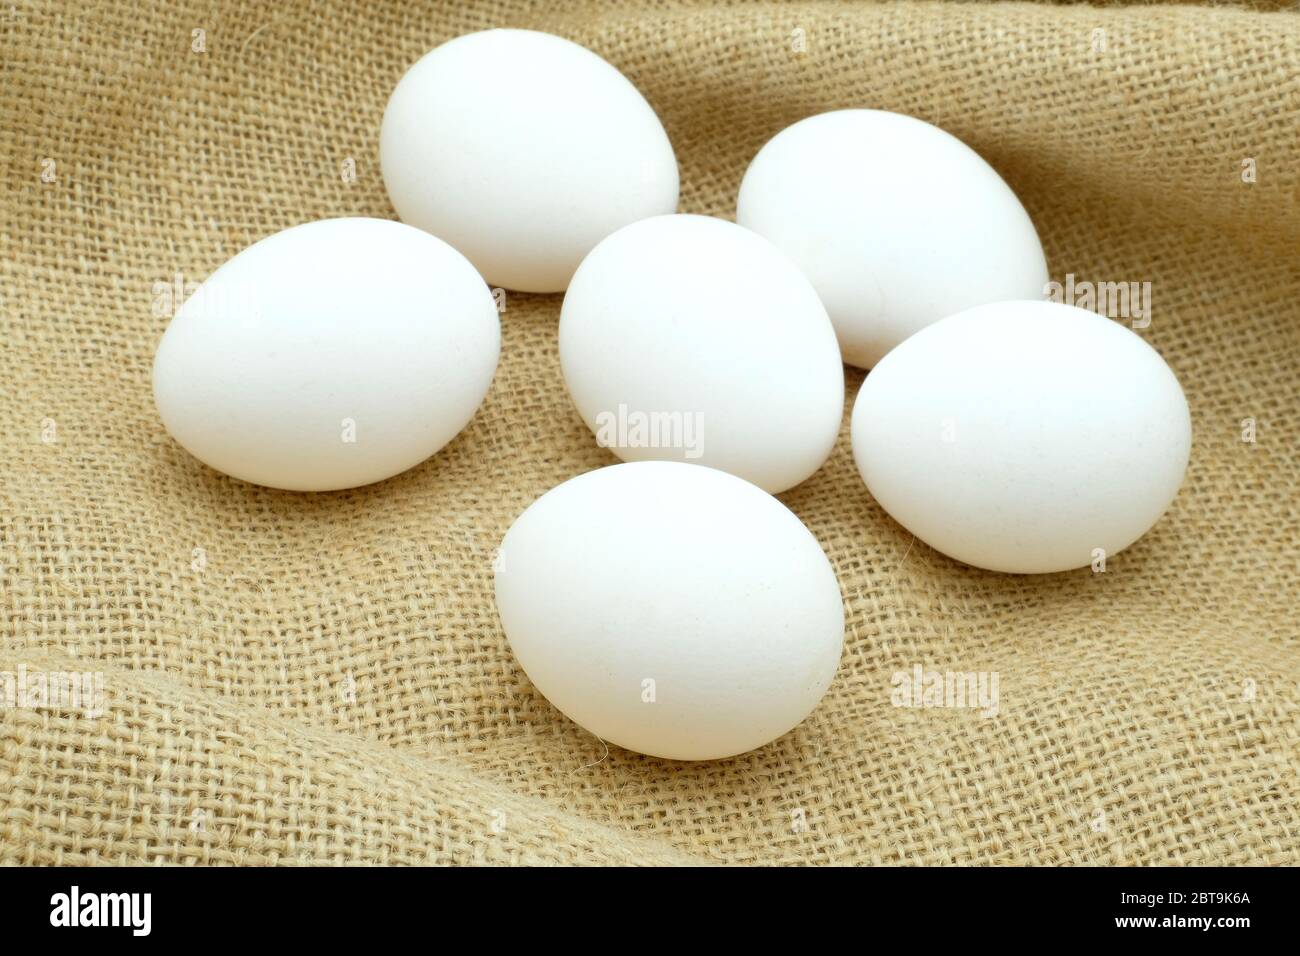 Une demi-douzaine d'œufs blancs à portée libre, assis sur un tissu de hessian Banque D'Images